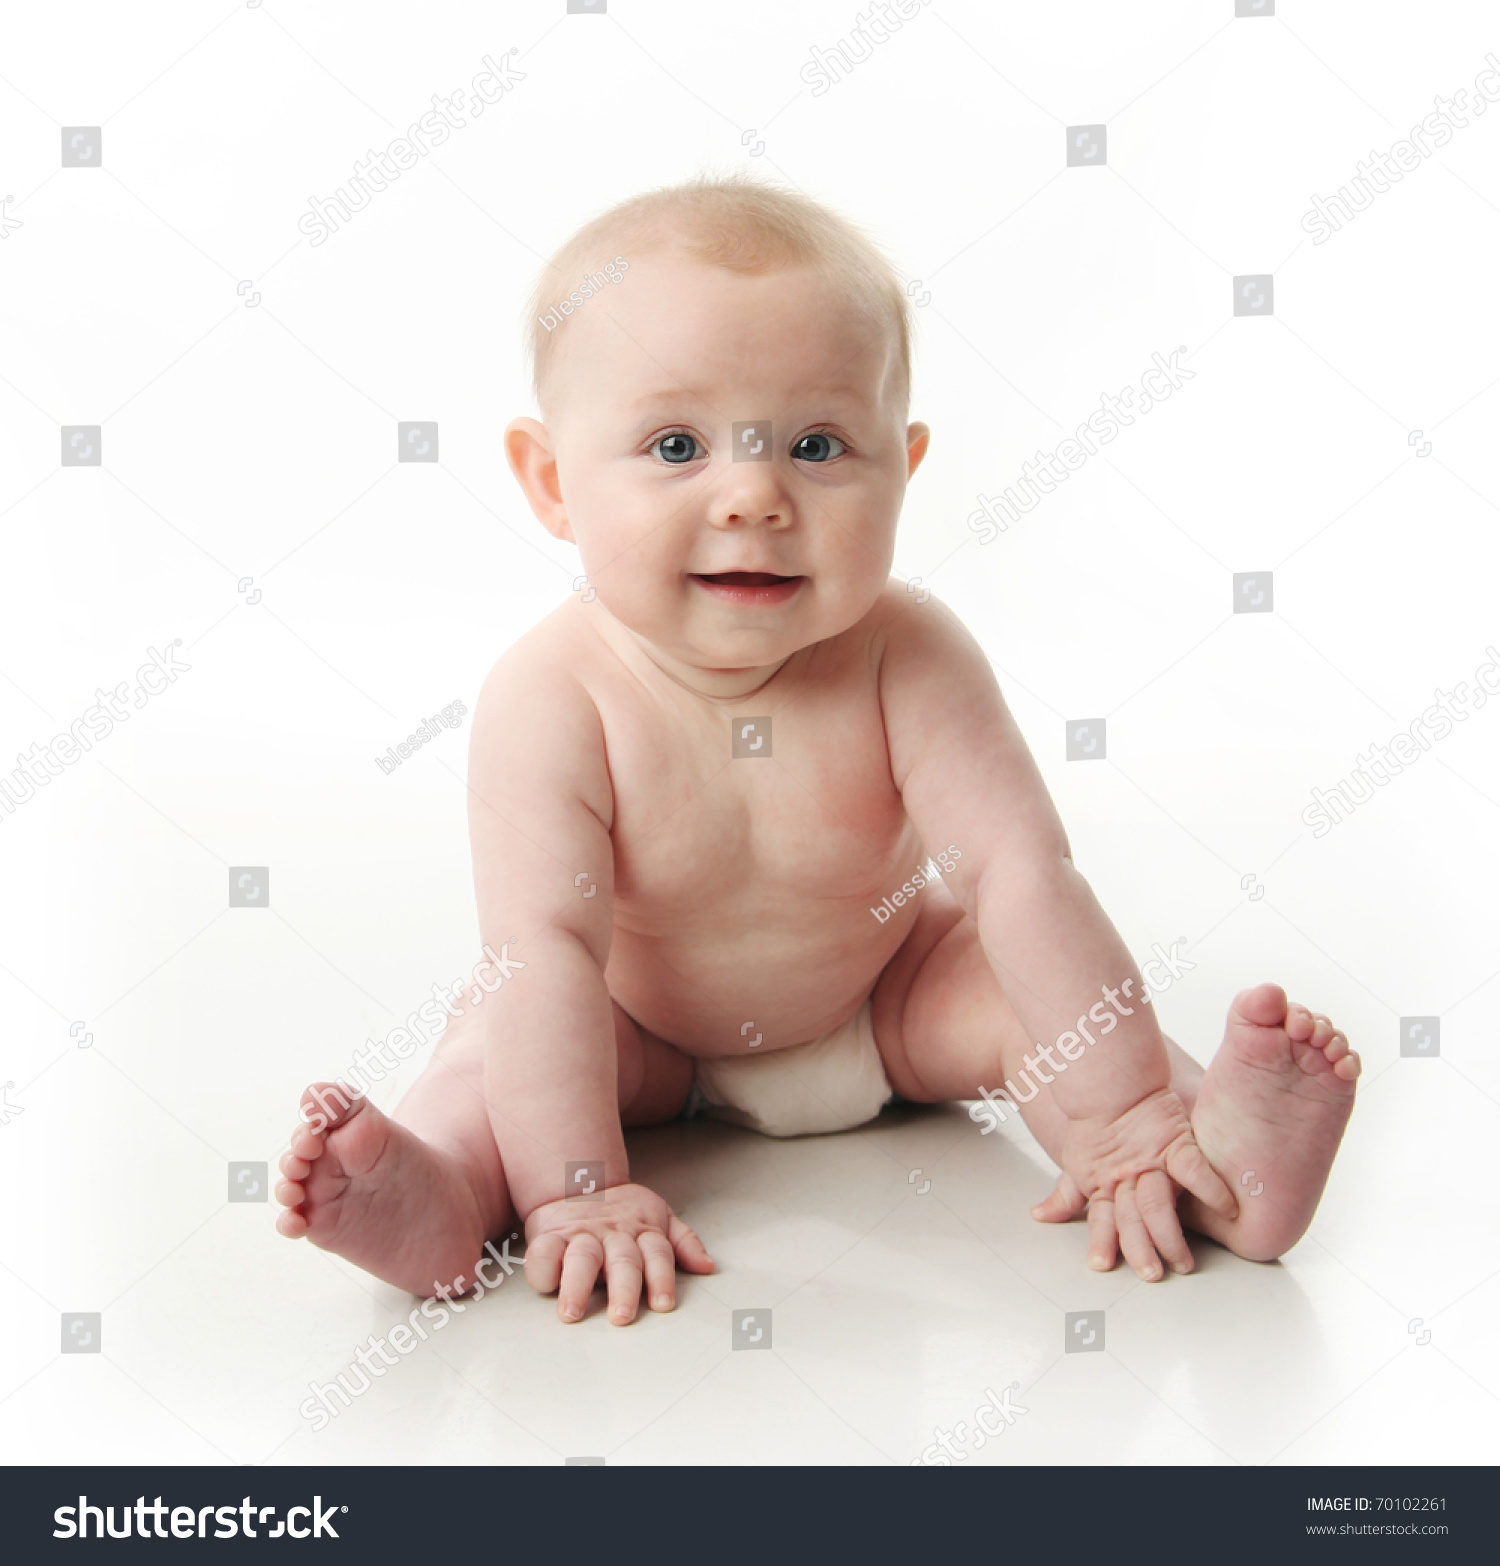 Новорожденный ребенок голенький